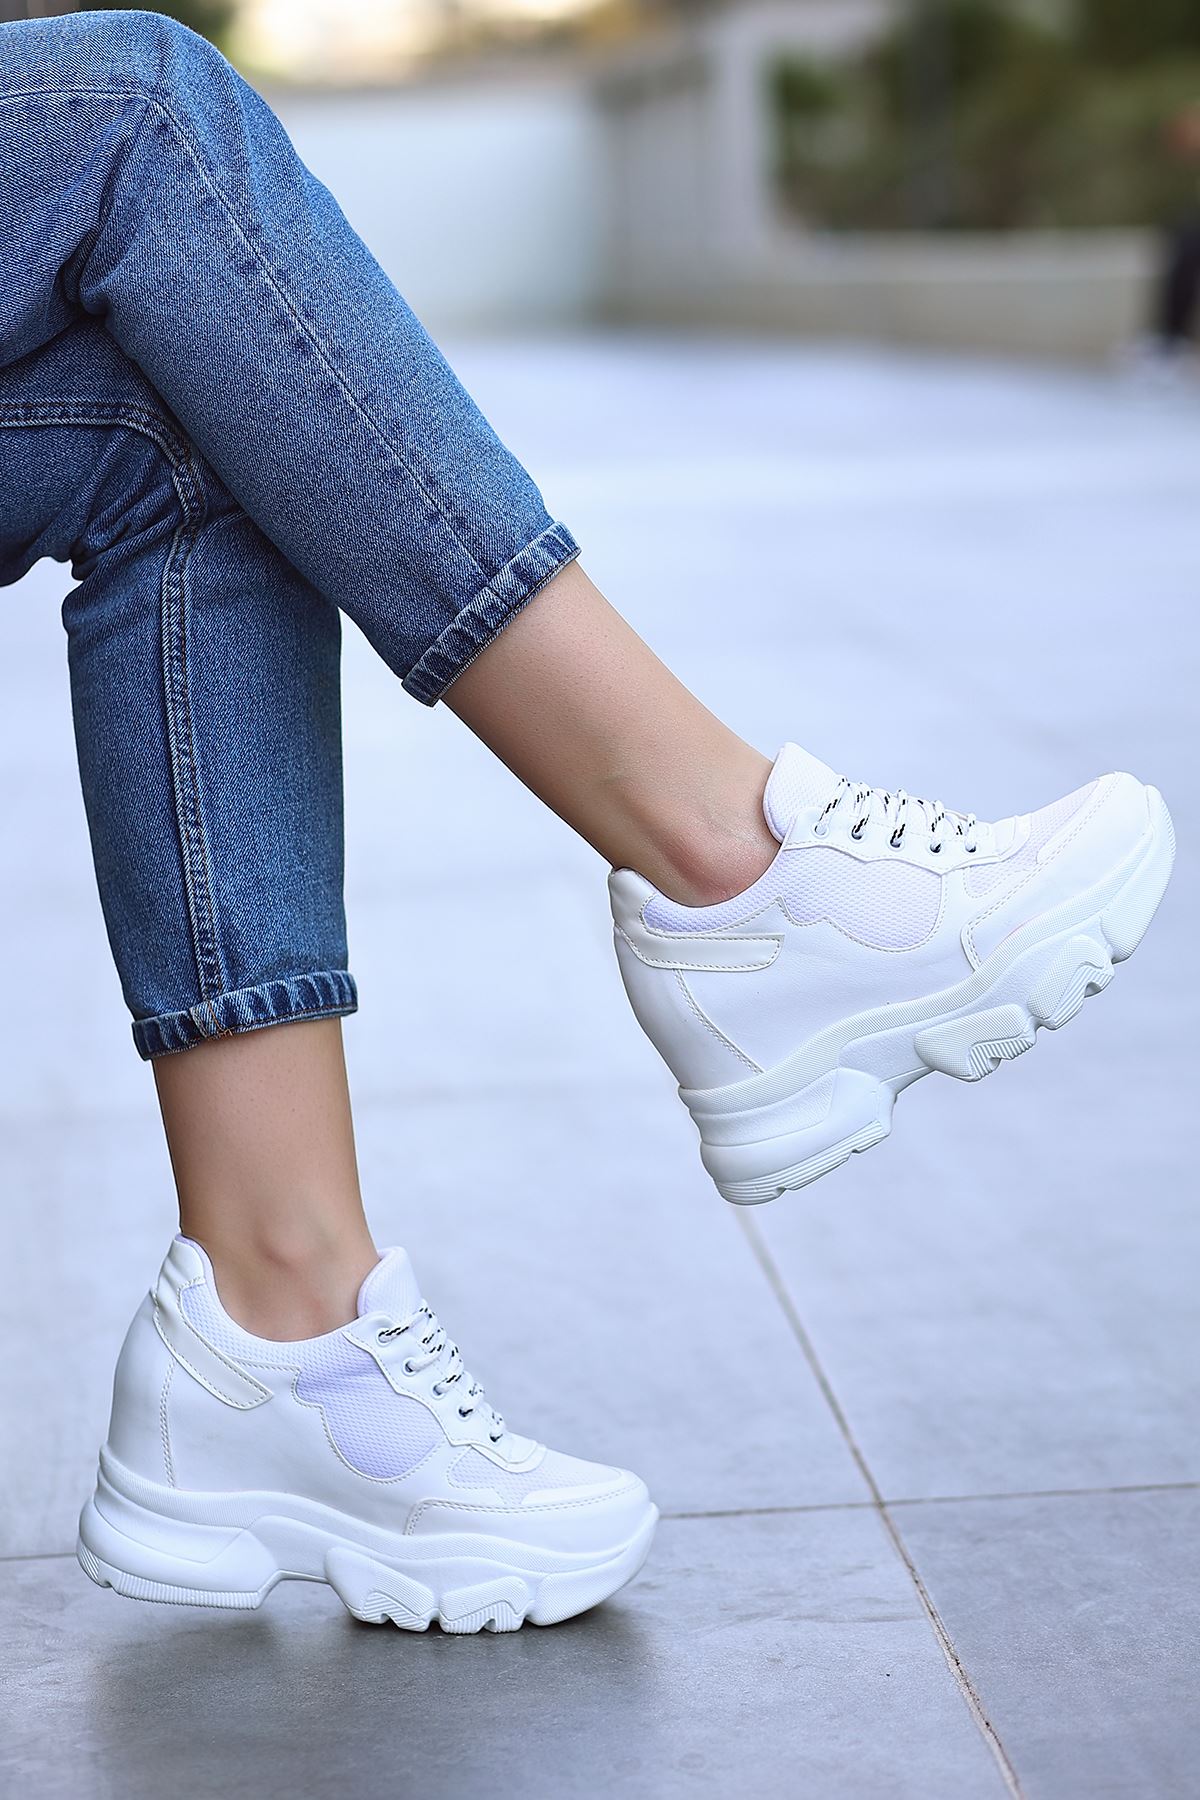 Ricka Beyaz Fileli Beyaz Hologram Mat Deri Bağcık Detay Yüksek Taban Kadın Spor Ayakkabı